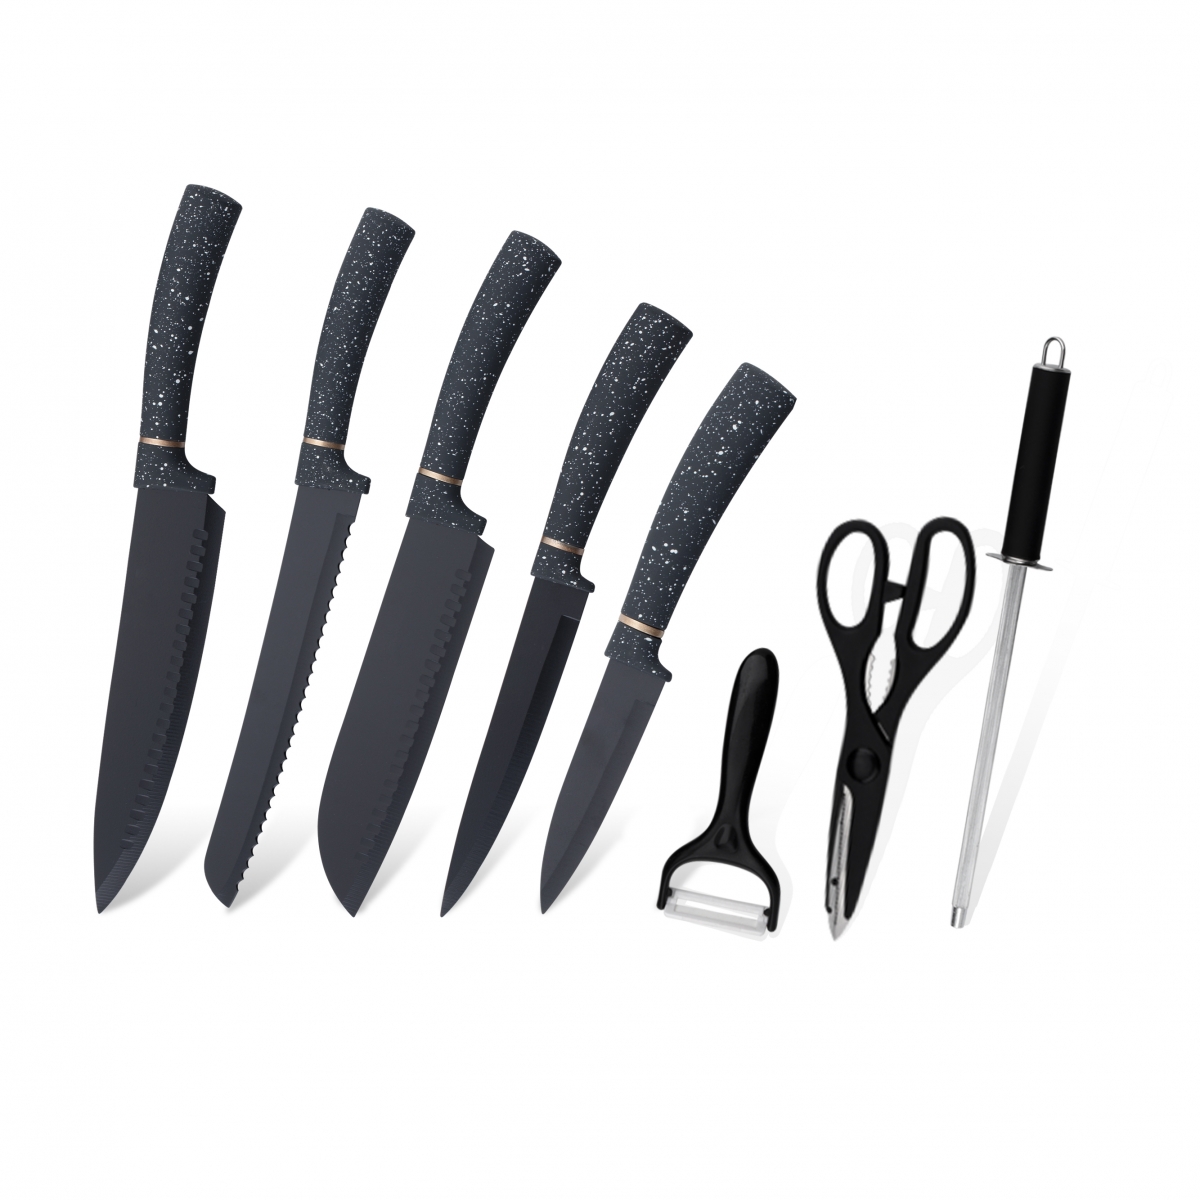 Для моїх кулінарних ножів, набір пластикових ножів, супергострий набір кухонних ножів на замовлення, в чому відмінність від подвійної блістерної картки та одинарної блістерної упаковки-ZX | кухонний ніж, кухонні інструменти, силіконова форма для торта, обробна дошка, набори інструментів для випічки, кухарський ніж, ніж для стейків, ніж для слайсерів, канцелярський ніж, ніж для очищення, блок ножа, підставка для ножів, ніж Santoku, ніж для малюків, пластиковий ніж для нарізки, Ніж, різнокольоровий ніж, ніж з нержавіючої сталі, відкривачка для консервів, відкривачка для пляшок, ситечко для чаю, терка, збивалка для яєць, нейлоновий кухонний інструмент, силіконовий кухонний інструмент, різак для печива, набір ножів для кулінарії, точилка для ножів, очисниця, ніж для торта, нож для пирога, Ніж, силіконова лопатка, силіконова ложка, щипці для їжі, кований ніж, кухонні ножиці, ножі для випічки тортів, дитячі кулінарні ножі, ніж для різьблення